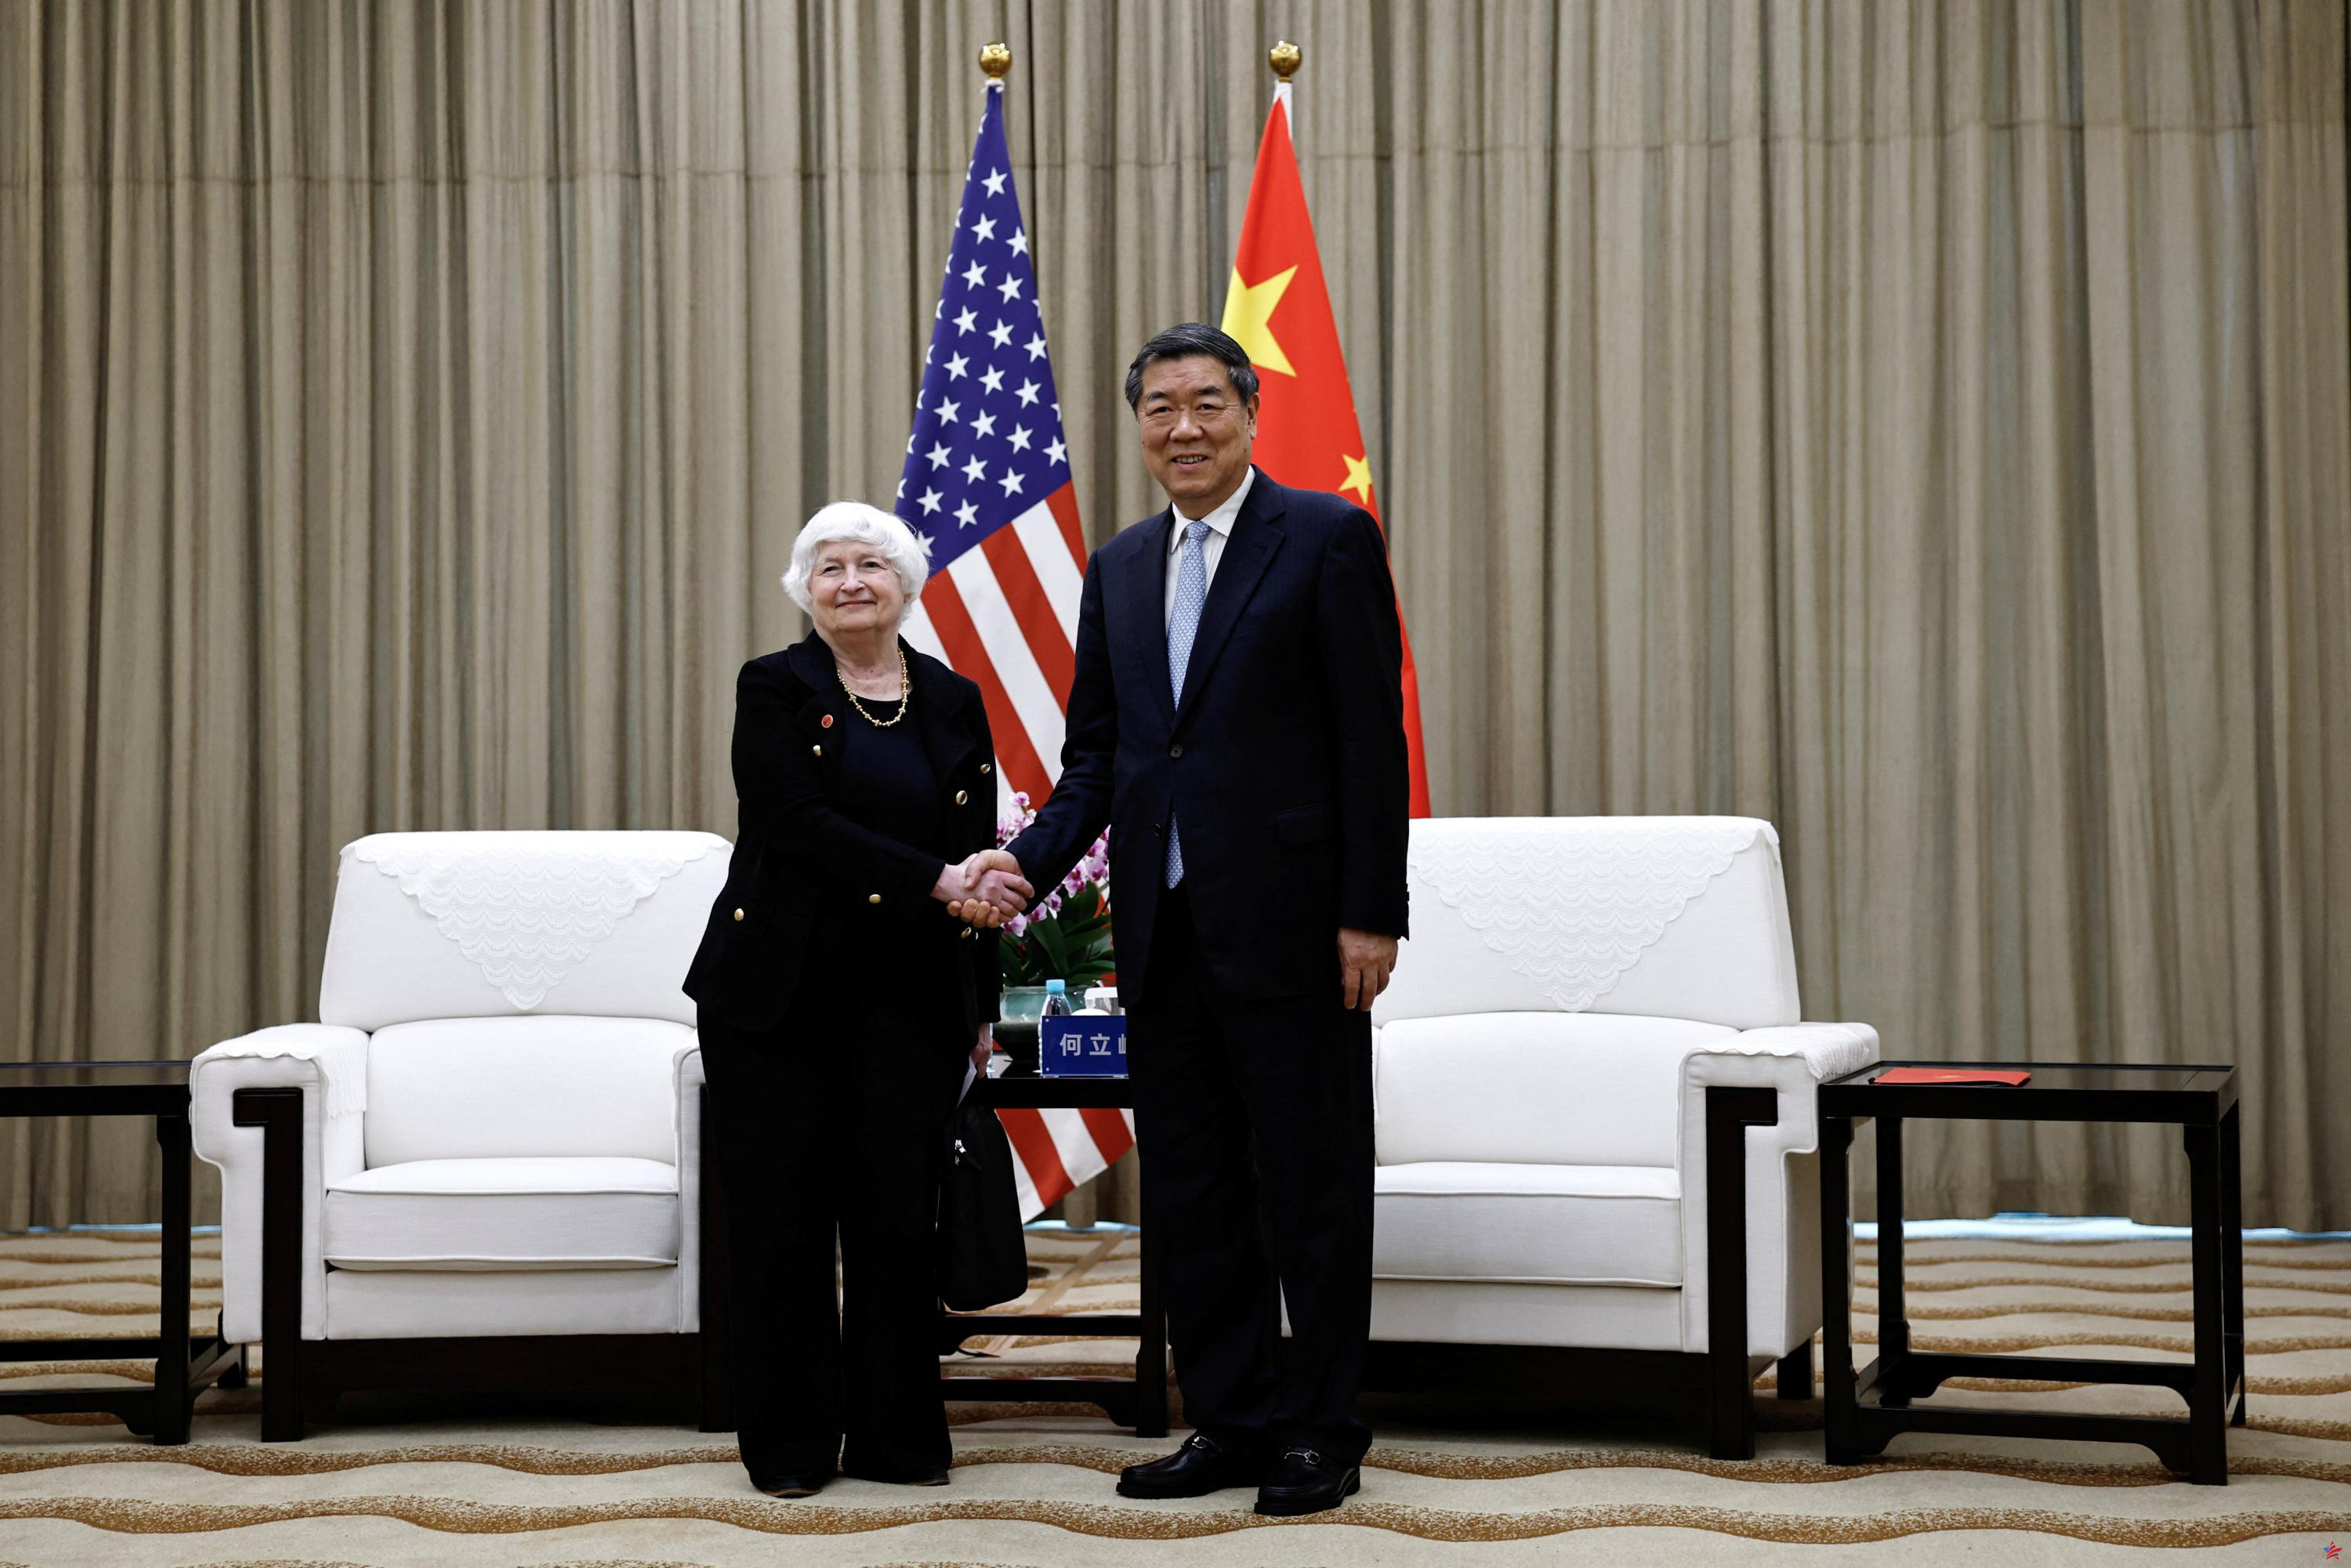 Estados Unidos y China acuerdan discutir sobre “crecimiento económico equilibrado”